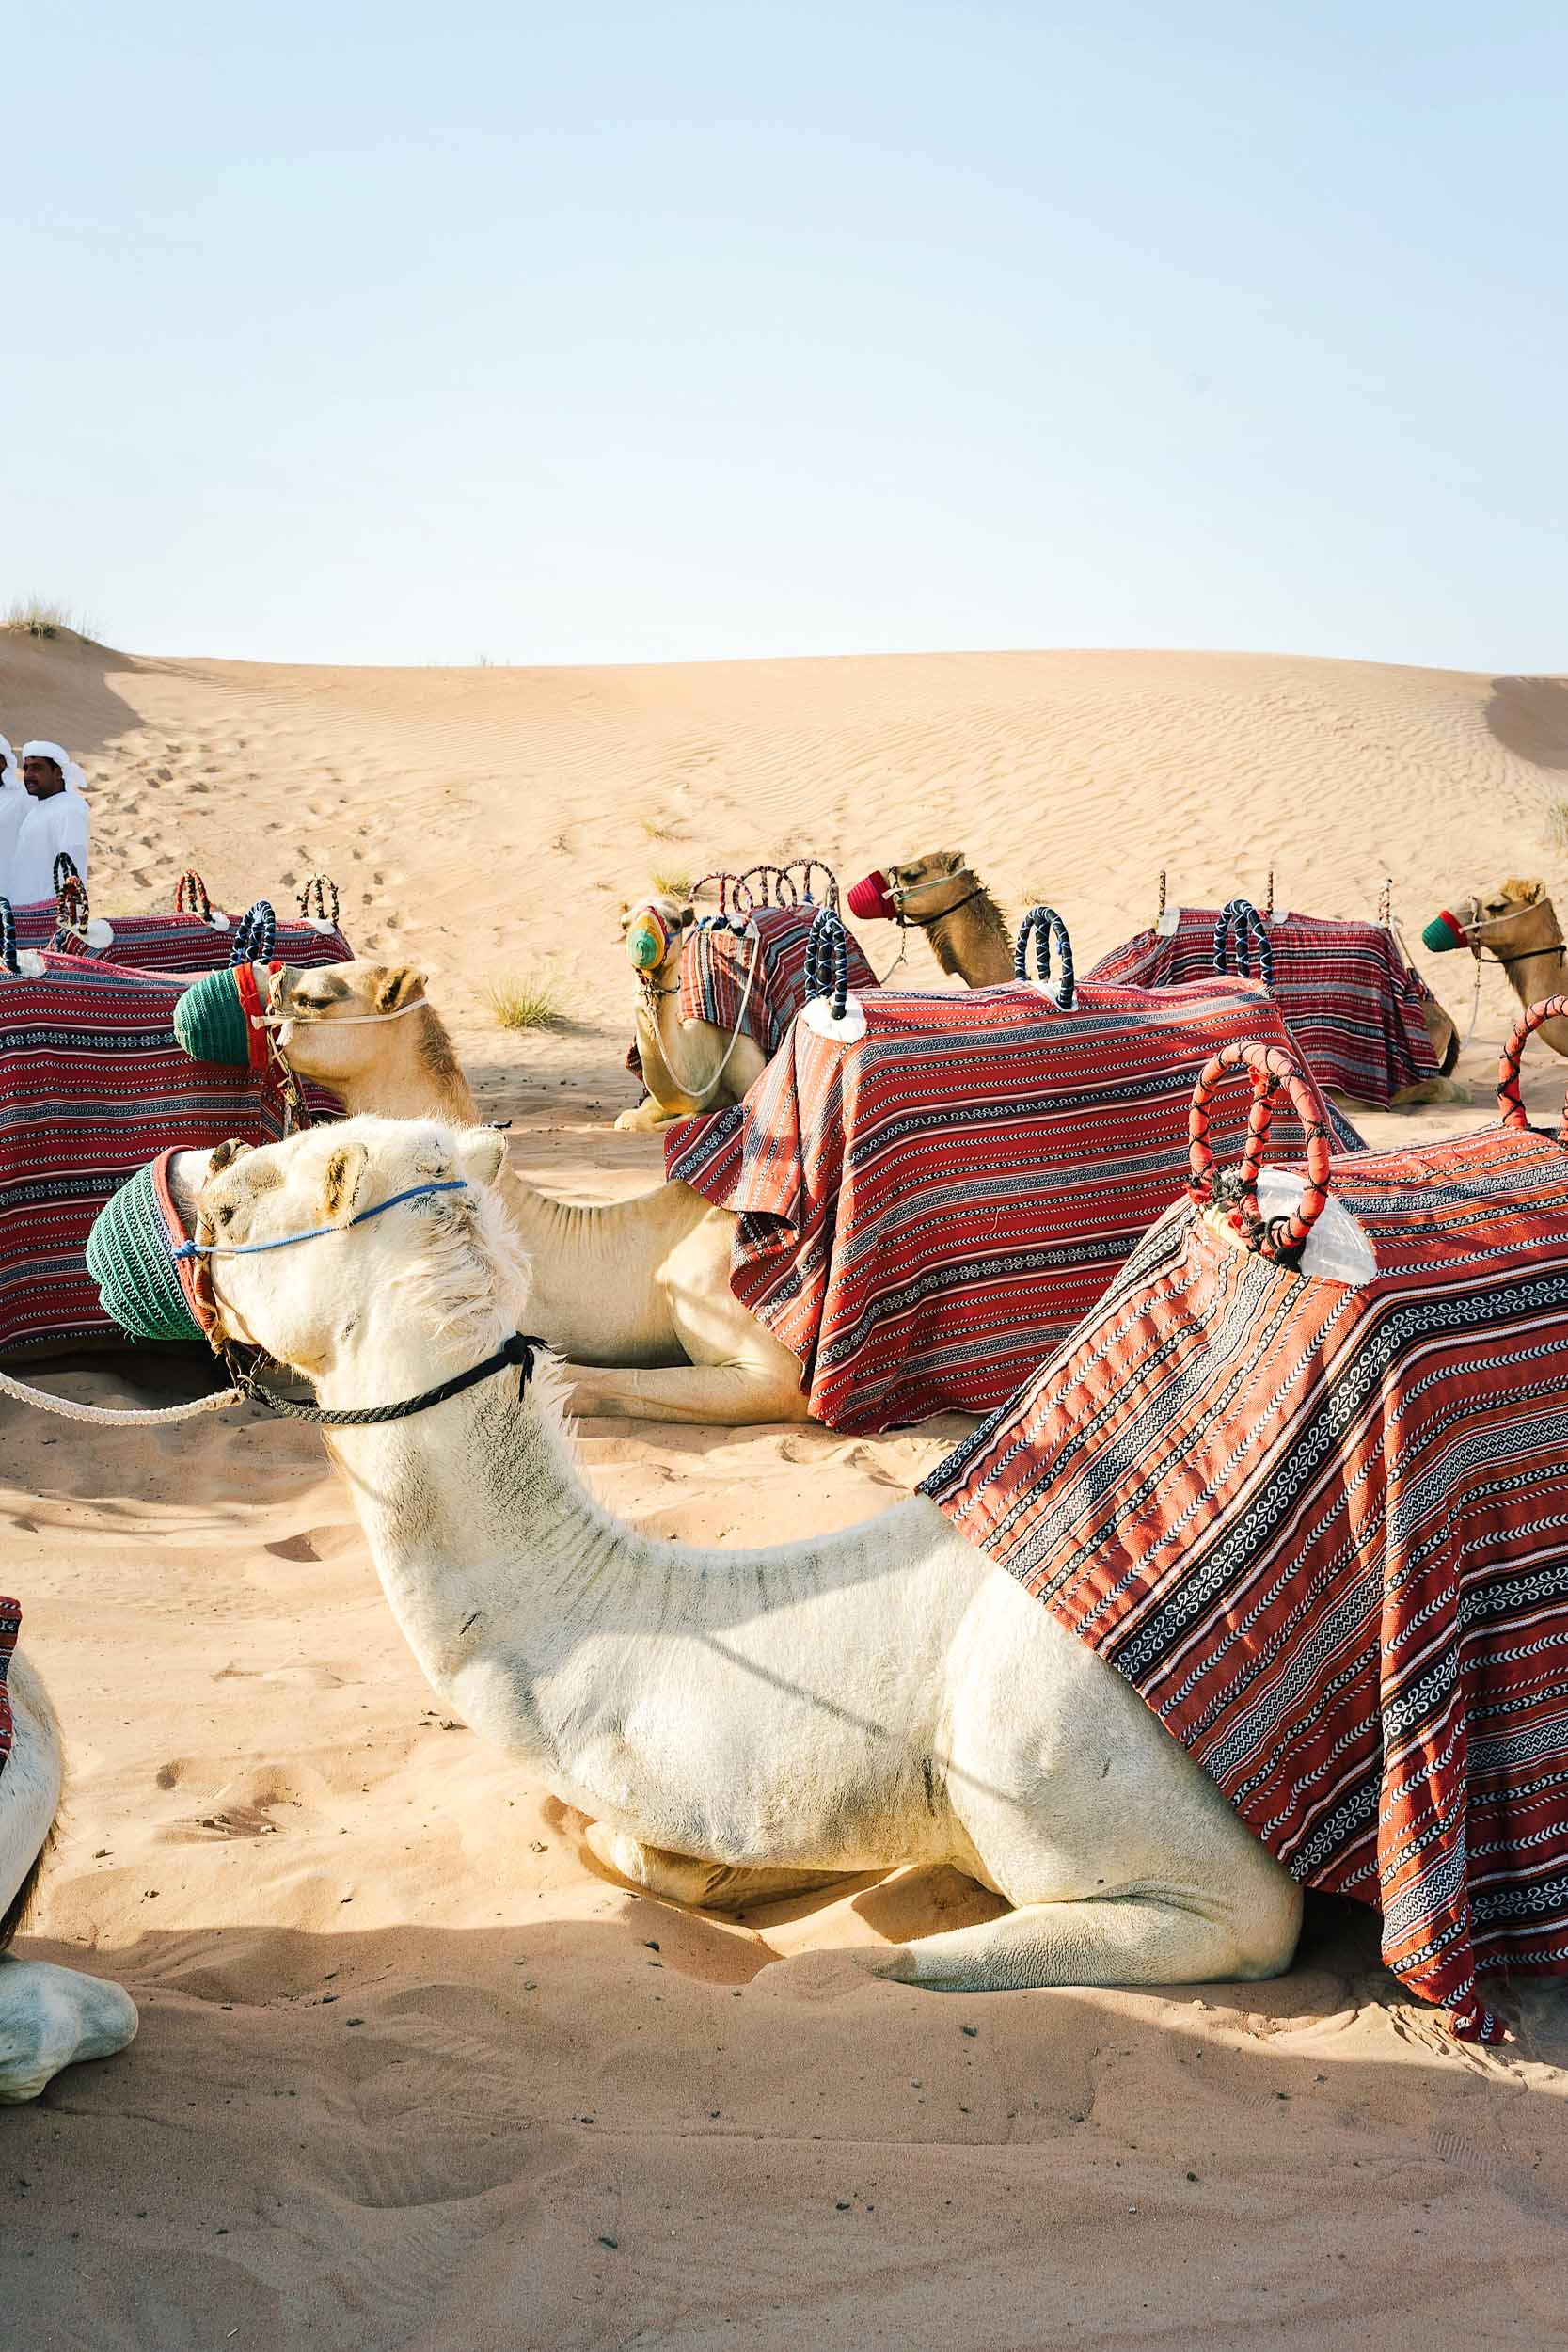 When in Dubai, ride a camel!